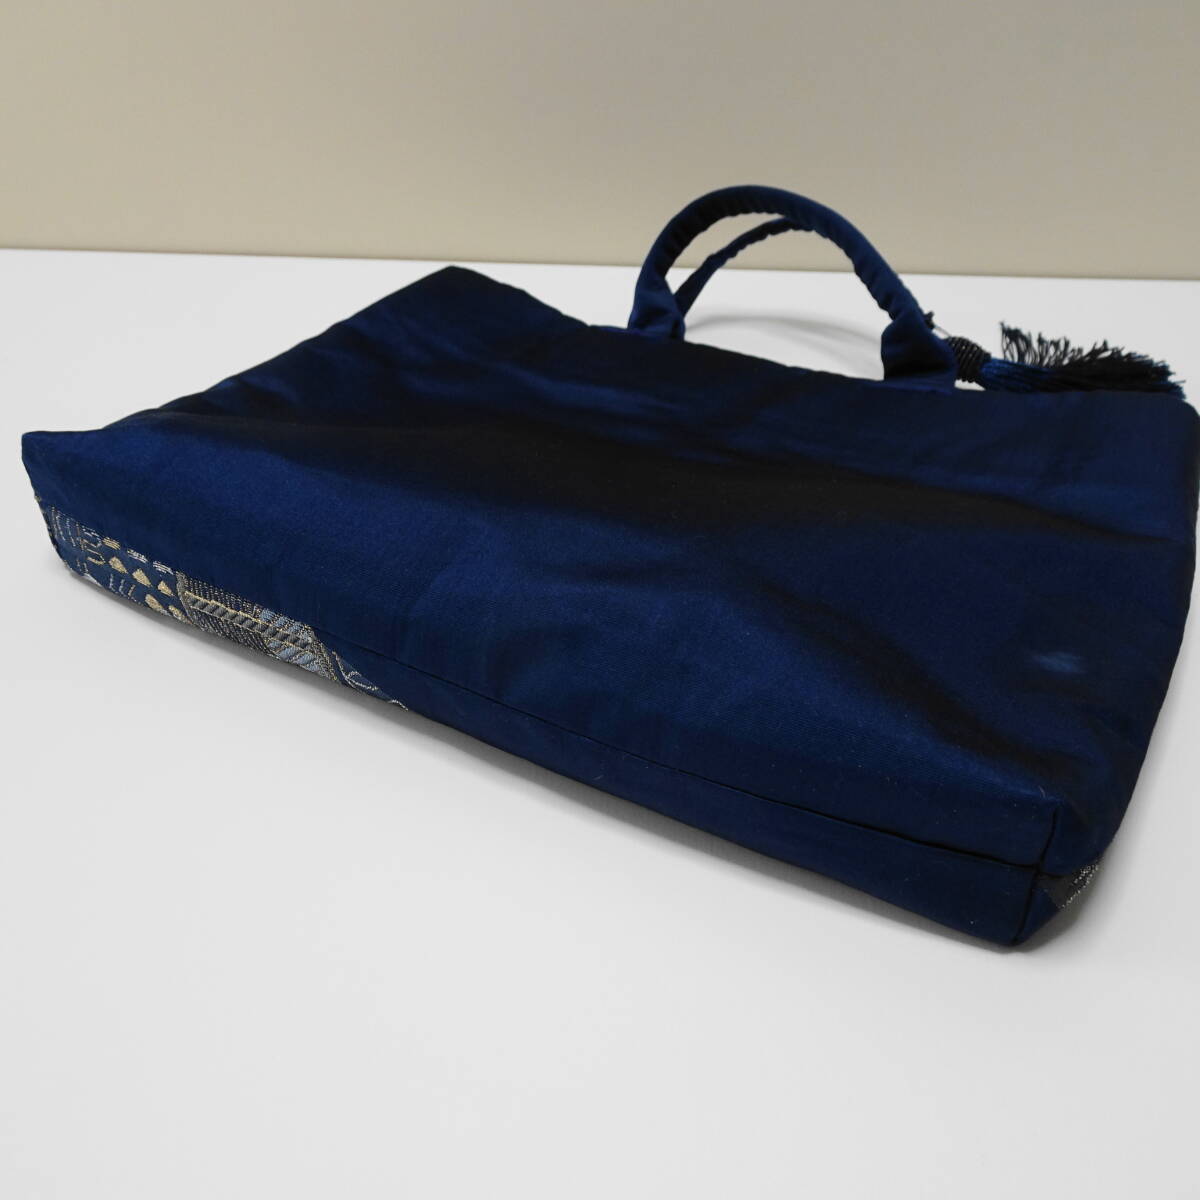  японский костюм сумка для покупок (ta со стартером ) натуральный шелк obi земля выгода для переделка товар 